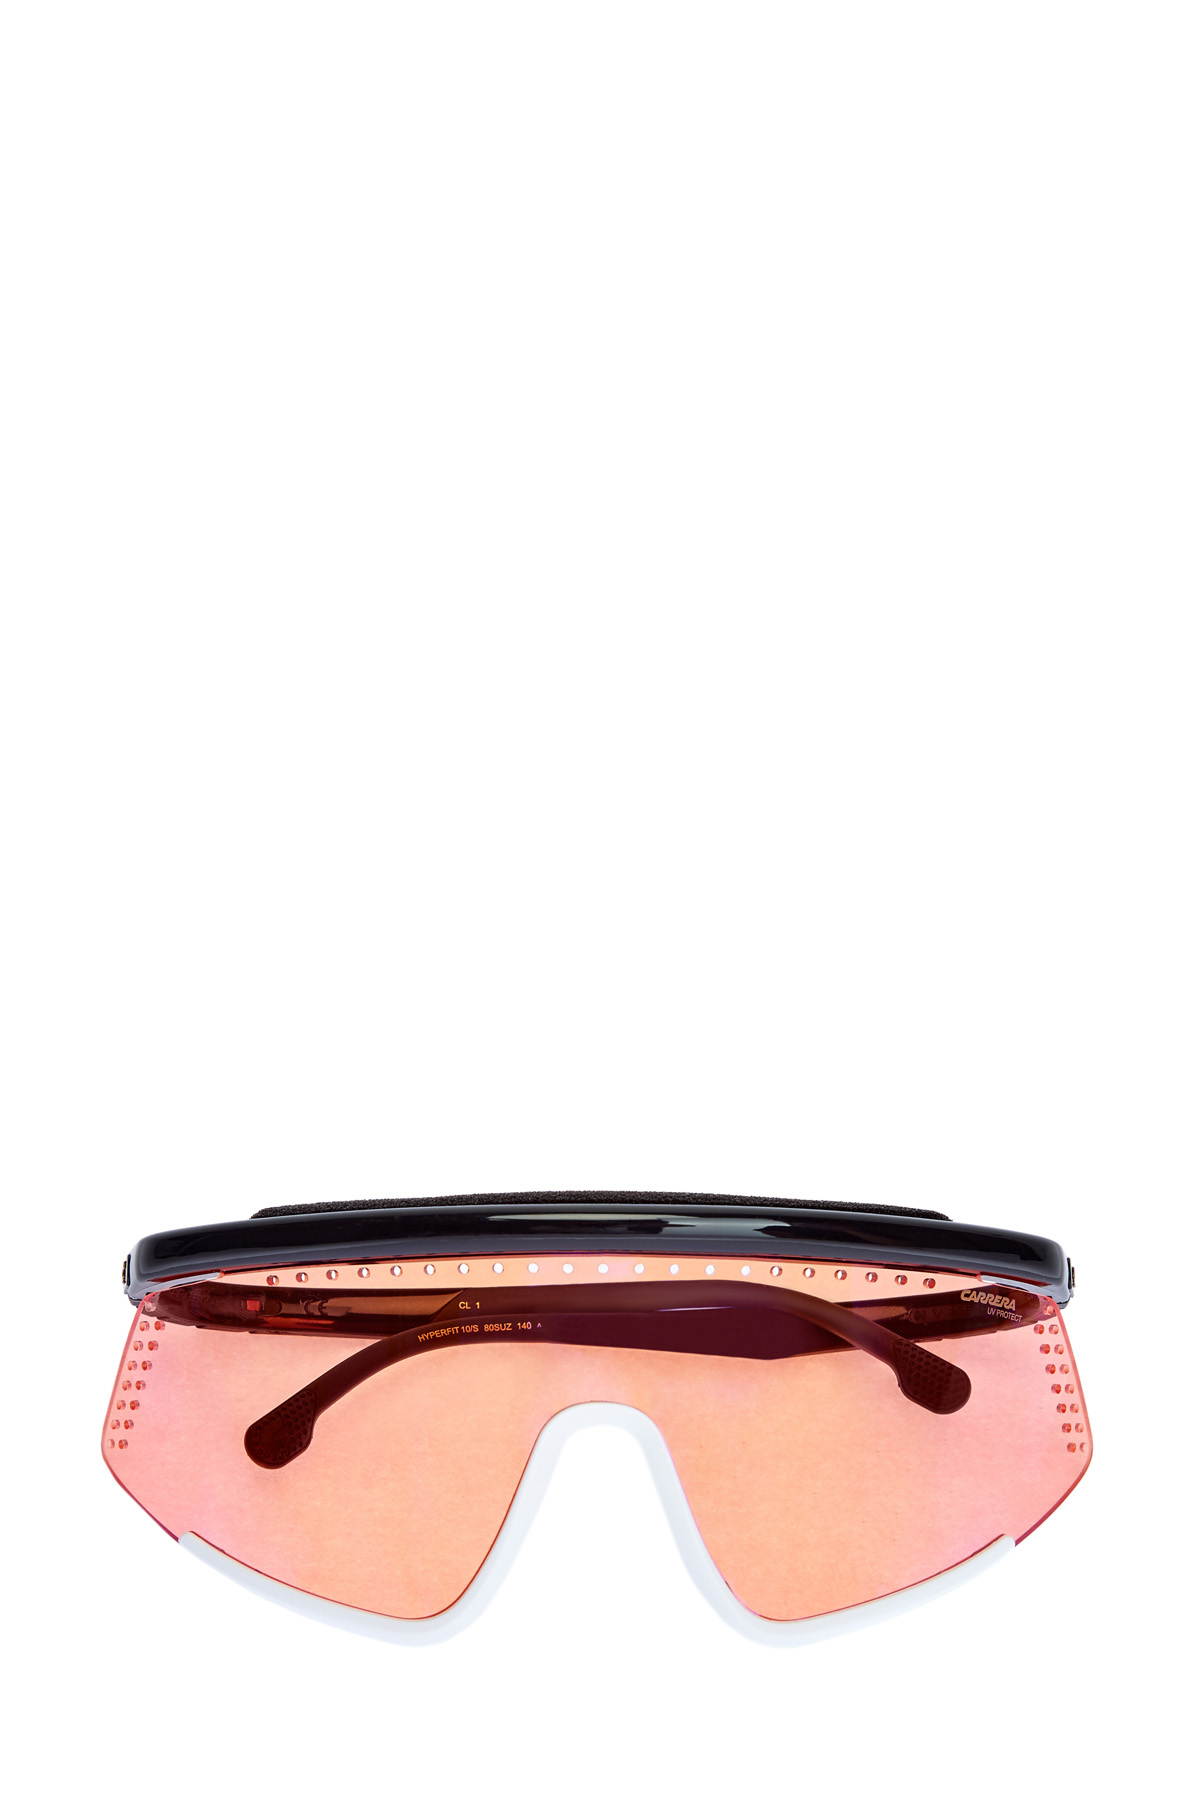 Антибликовые очки-визоры Hyper Fit с гибкими прорезиненными дужками CARRERA (sunglasses), цвет мульти, размер 39;40 - фото 1